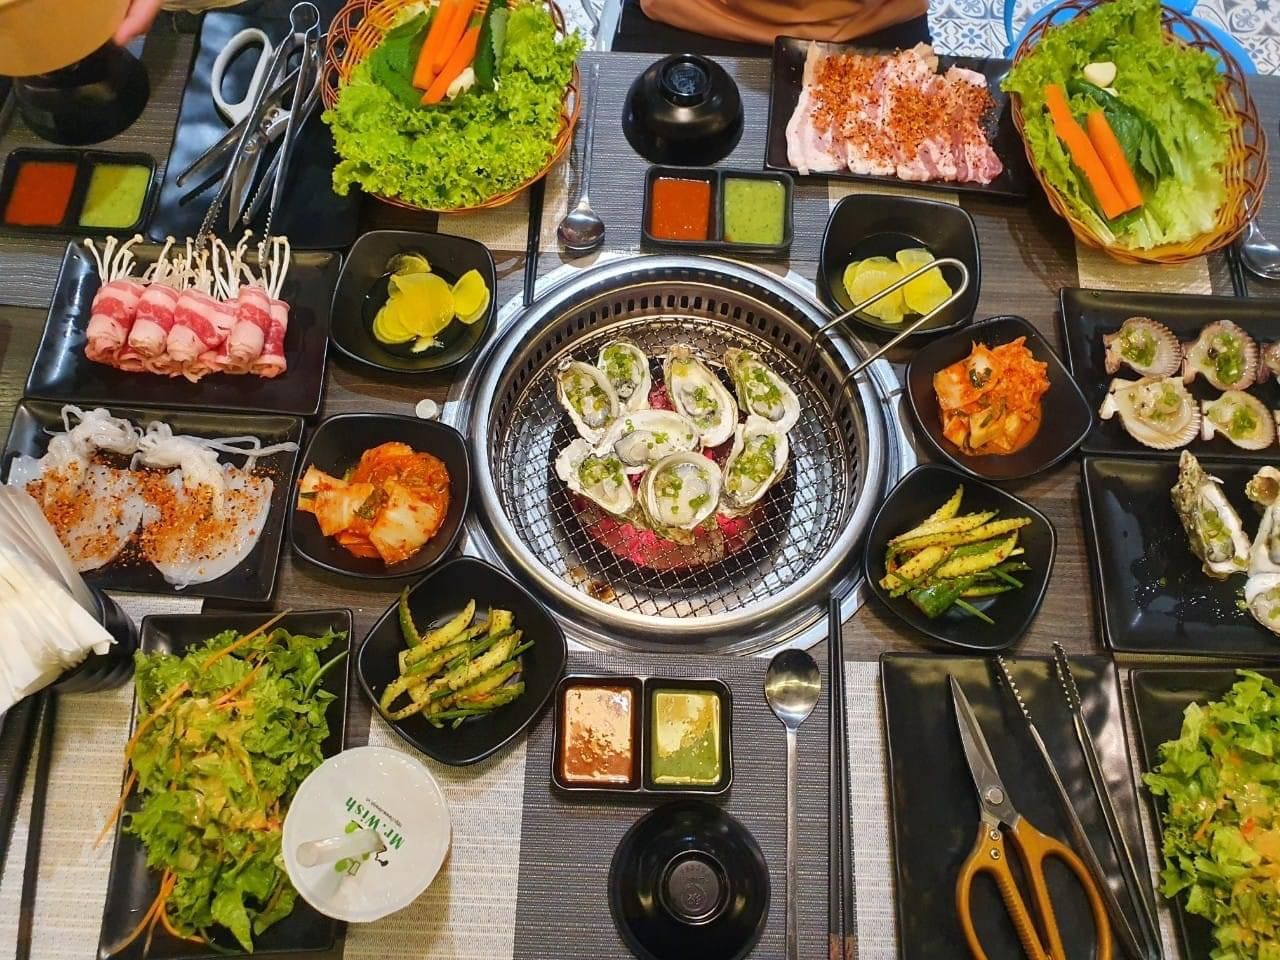 The Delight Restaurant tại Vinpearl Discovery Wonderworld Phú Quốc là lựa chọn buffet hải sản tốt cho du khách không? Hãy mô tả những điểm đặc biệt của nhà hàng này.